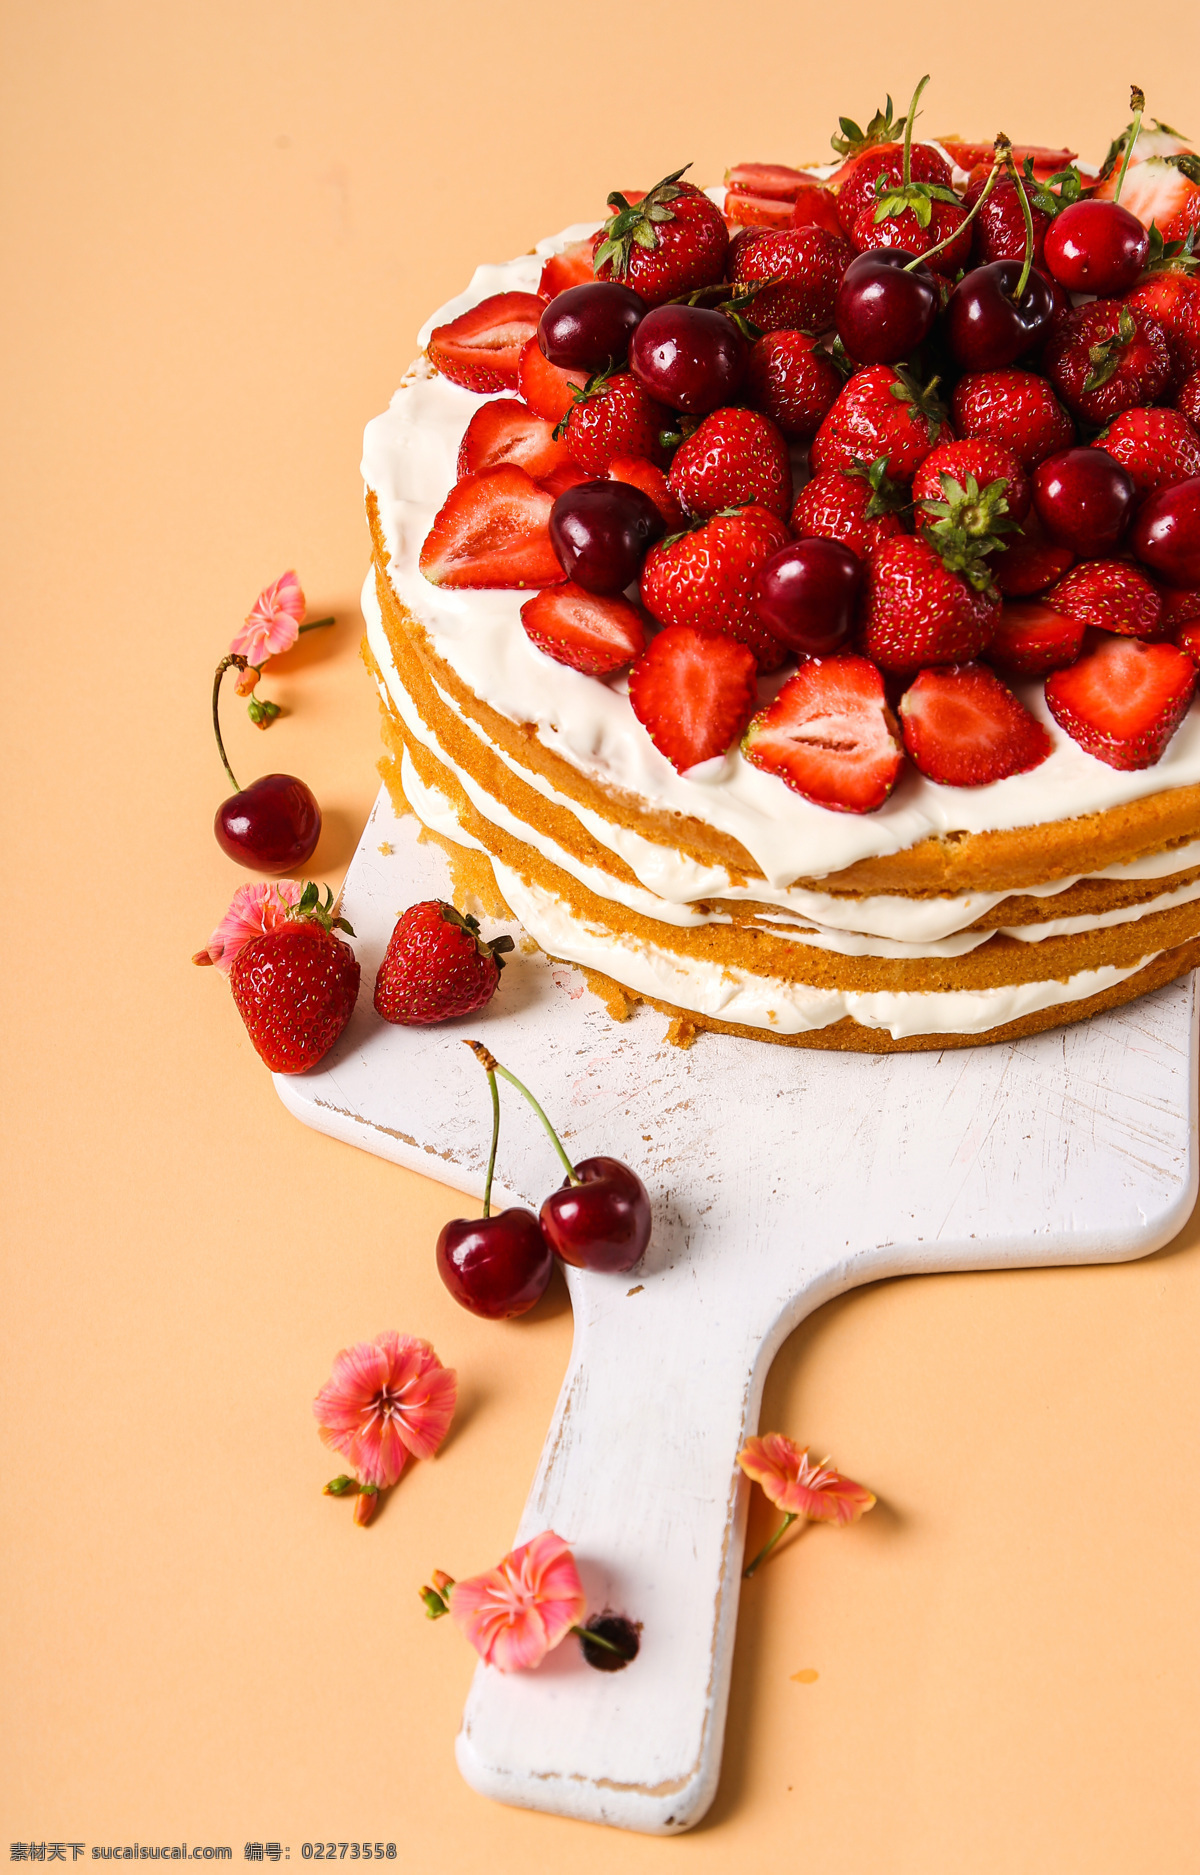 樱桃 草莓 蛋糕 樱桃草莓蛋糕 鲜花 花朵 新鲜水果 水果蛋糕 草莓蛋糕 甜品 美食 美味 其他类别 餐饮美食 黄色